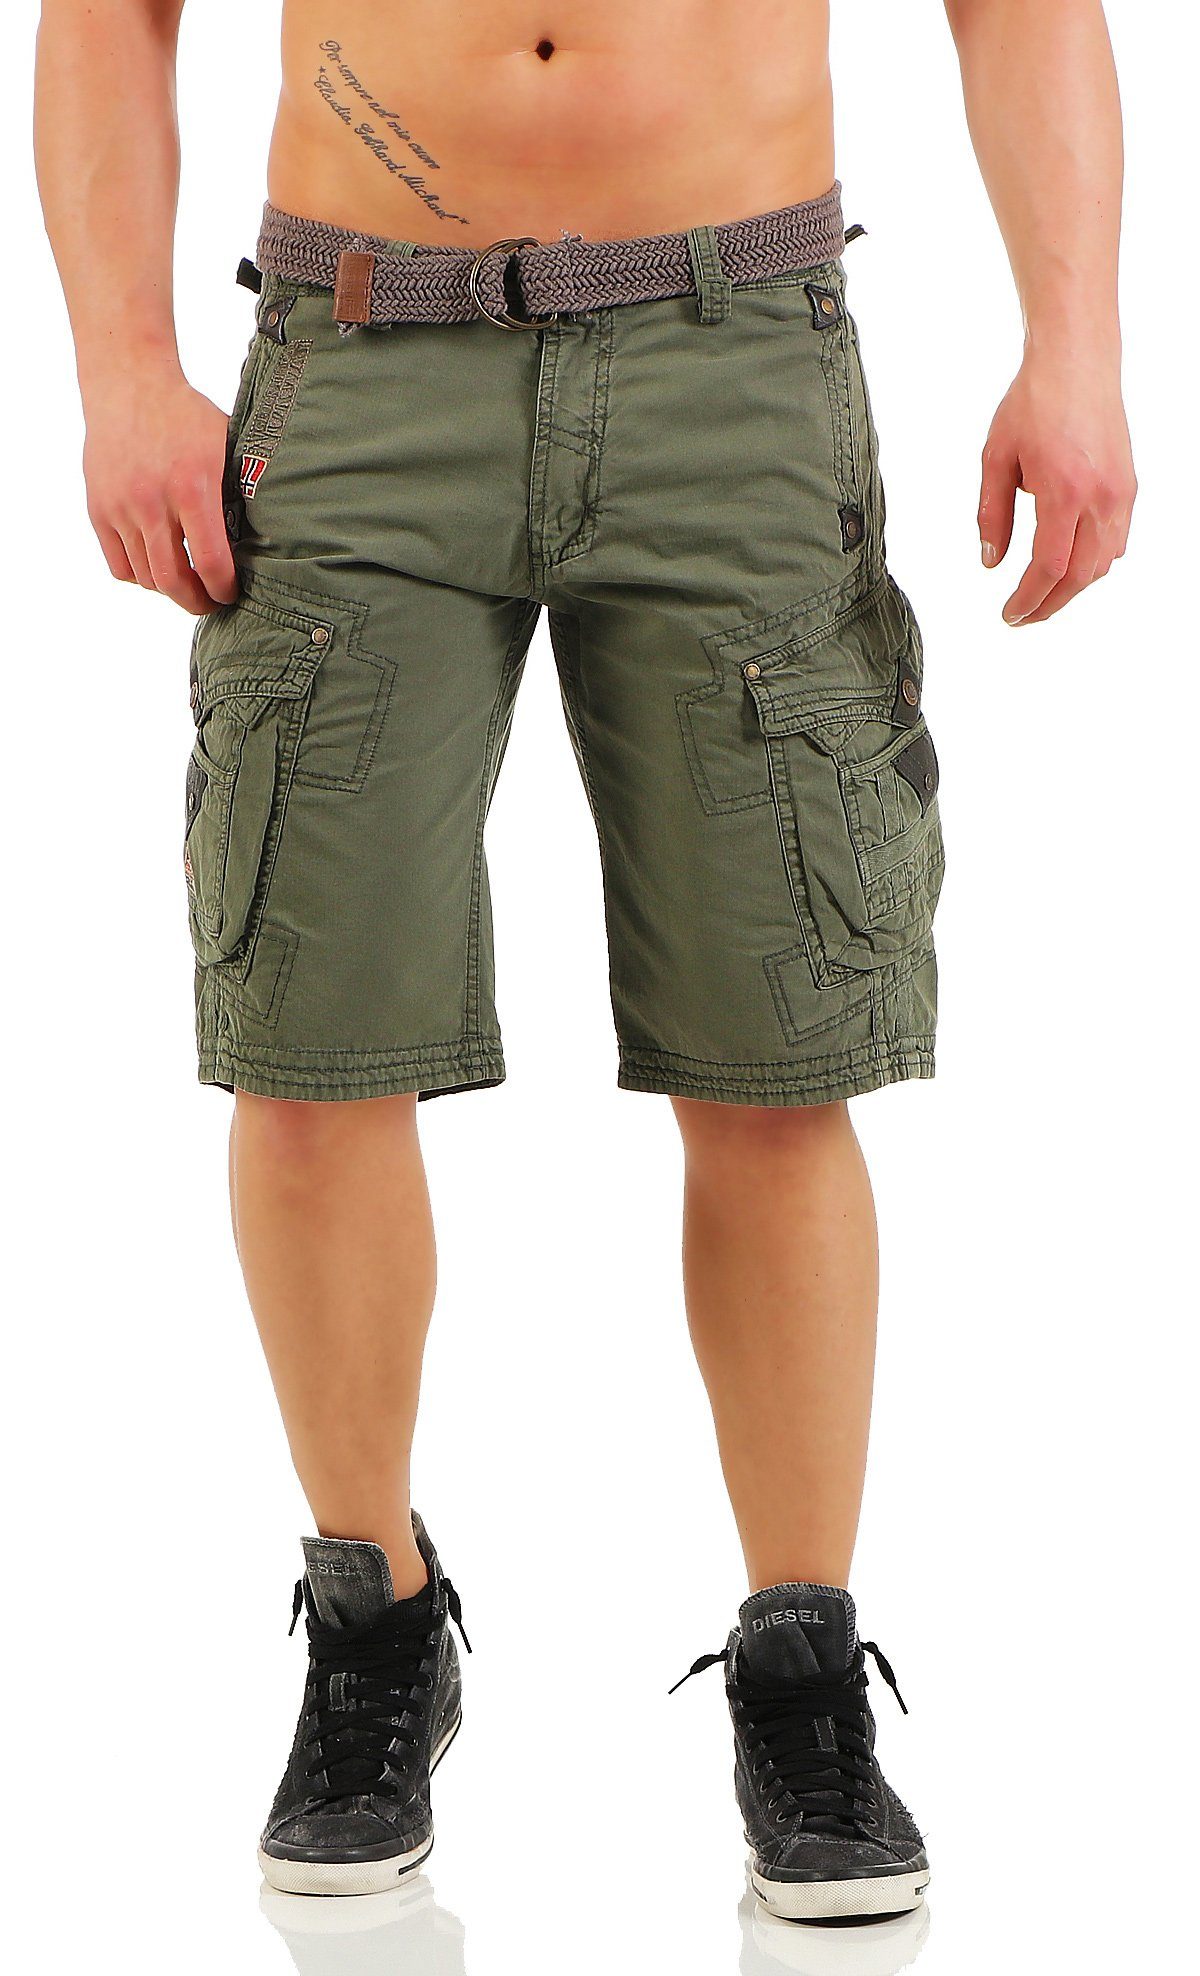 G-PERLE / (mit Shorts, Hose, Geographical abnehmbarem camouflage kurze Norway Herren unifarben Storm Cargoshorts Shorts Gürtel)